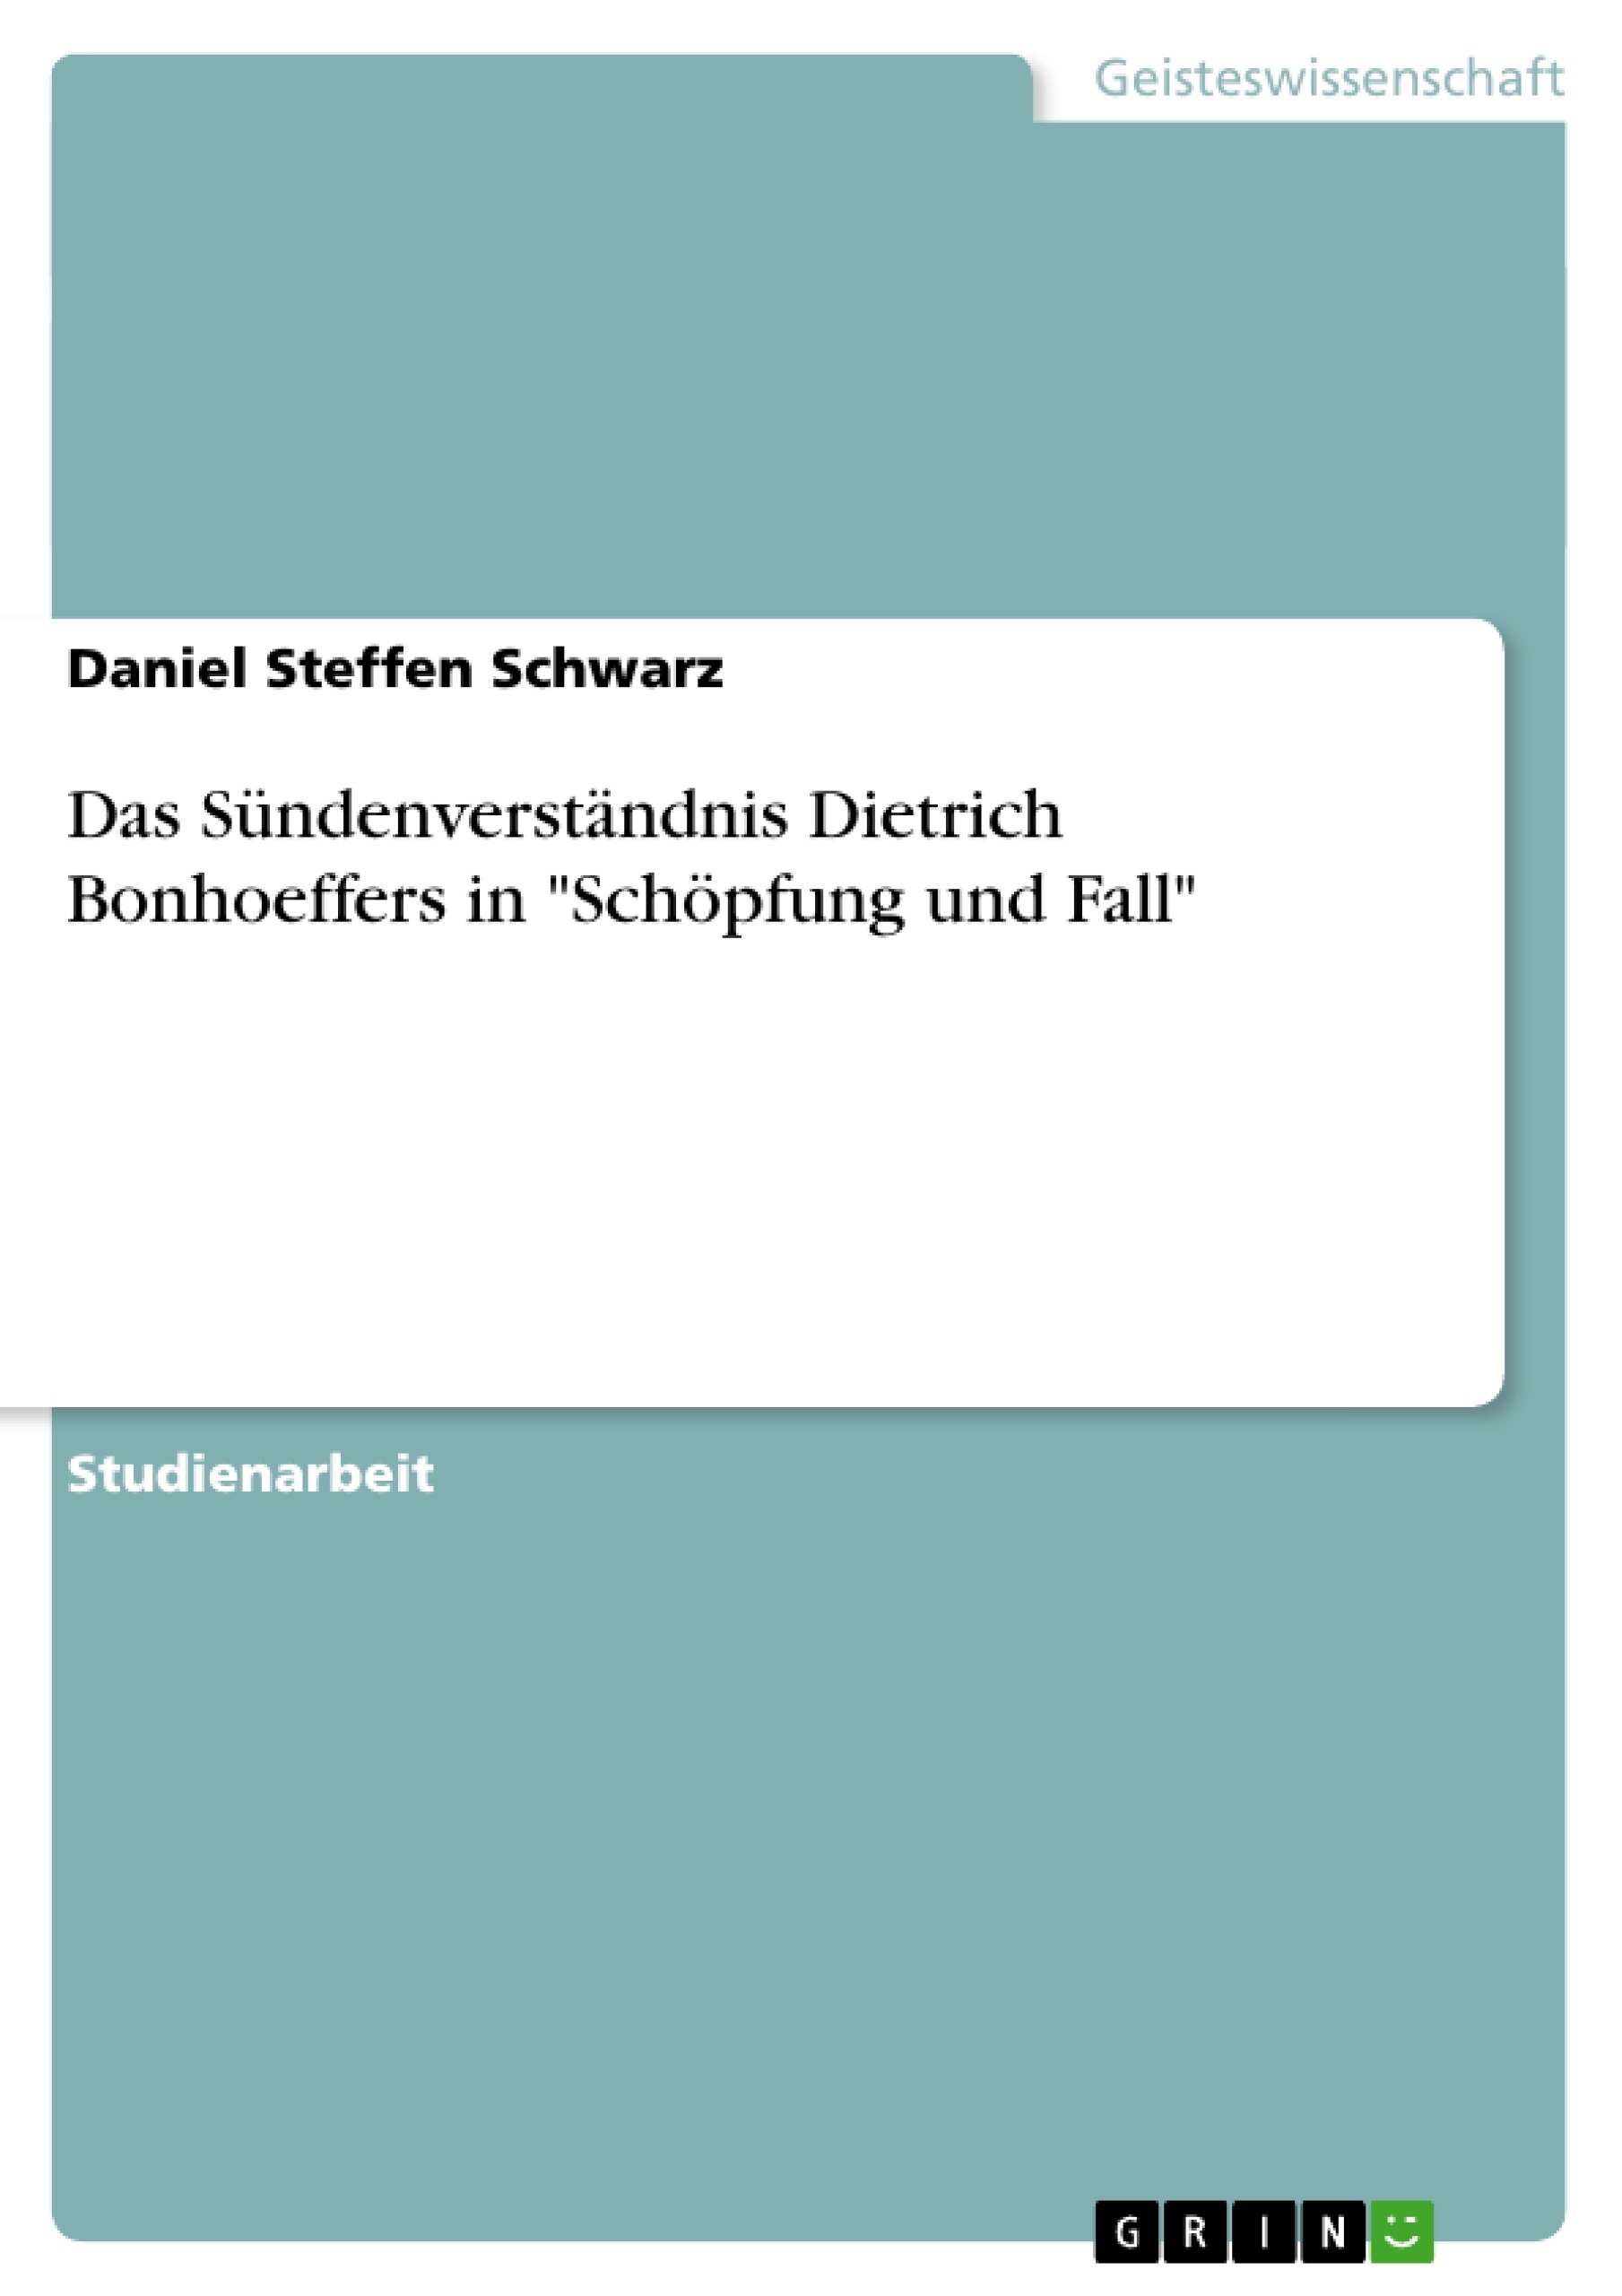 Title: Das Sündenverständnis Dietrich Bonhoeffers in "Schöpfung und Fall"